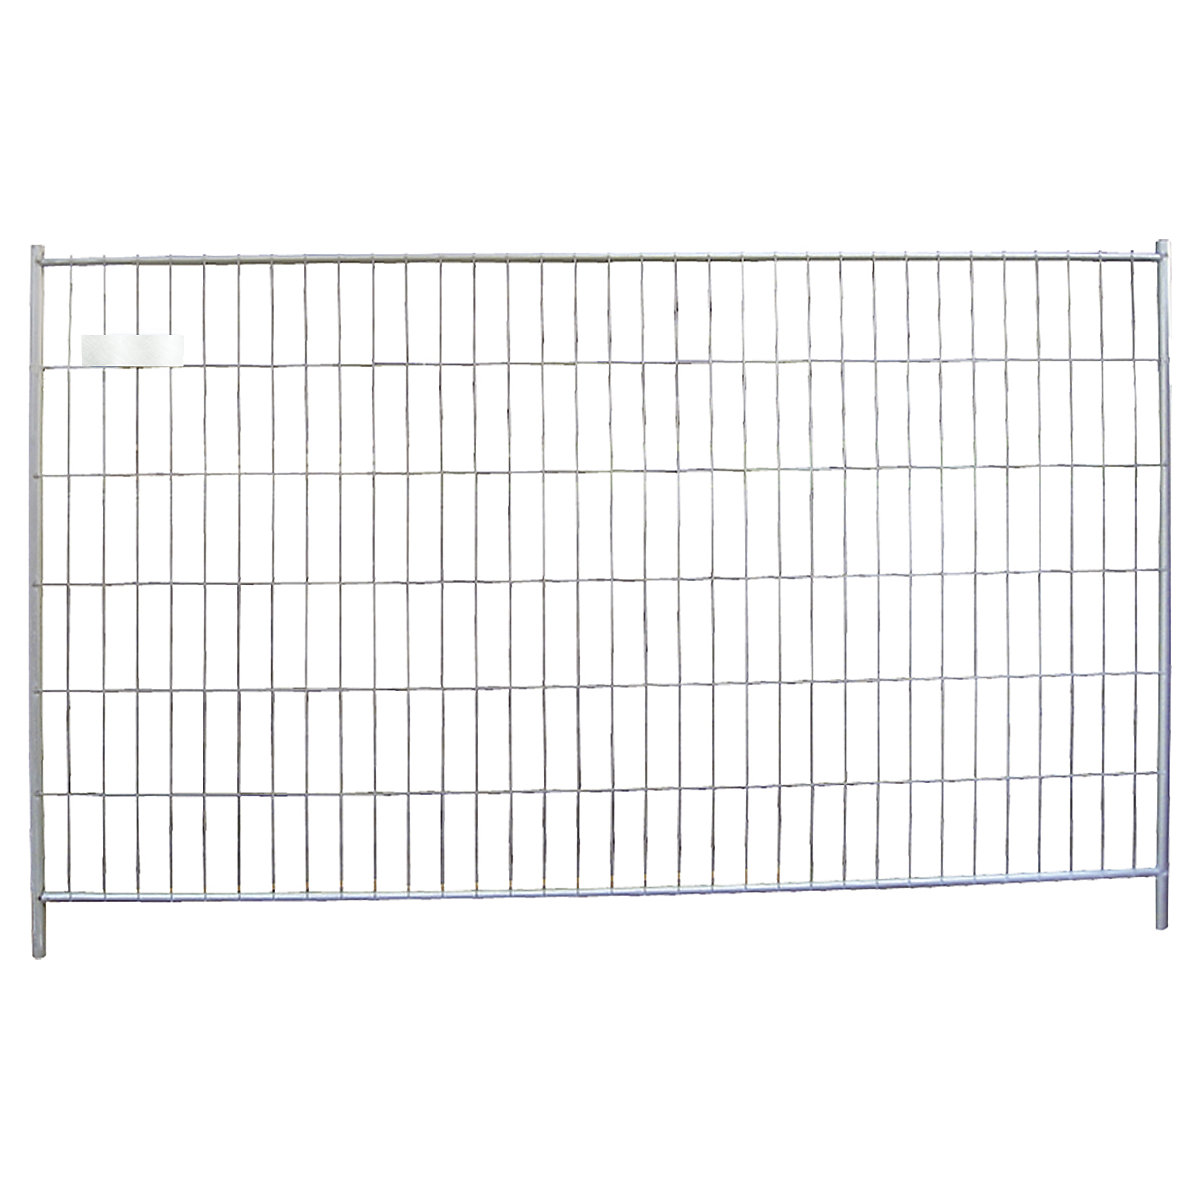 Stavebný plot, stenový prvok, šírka 3500 mm, výška 2000 mm-3